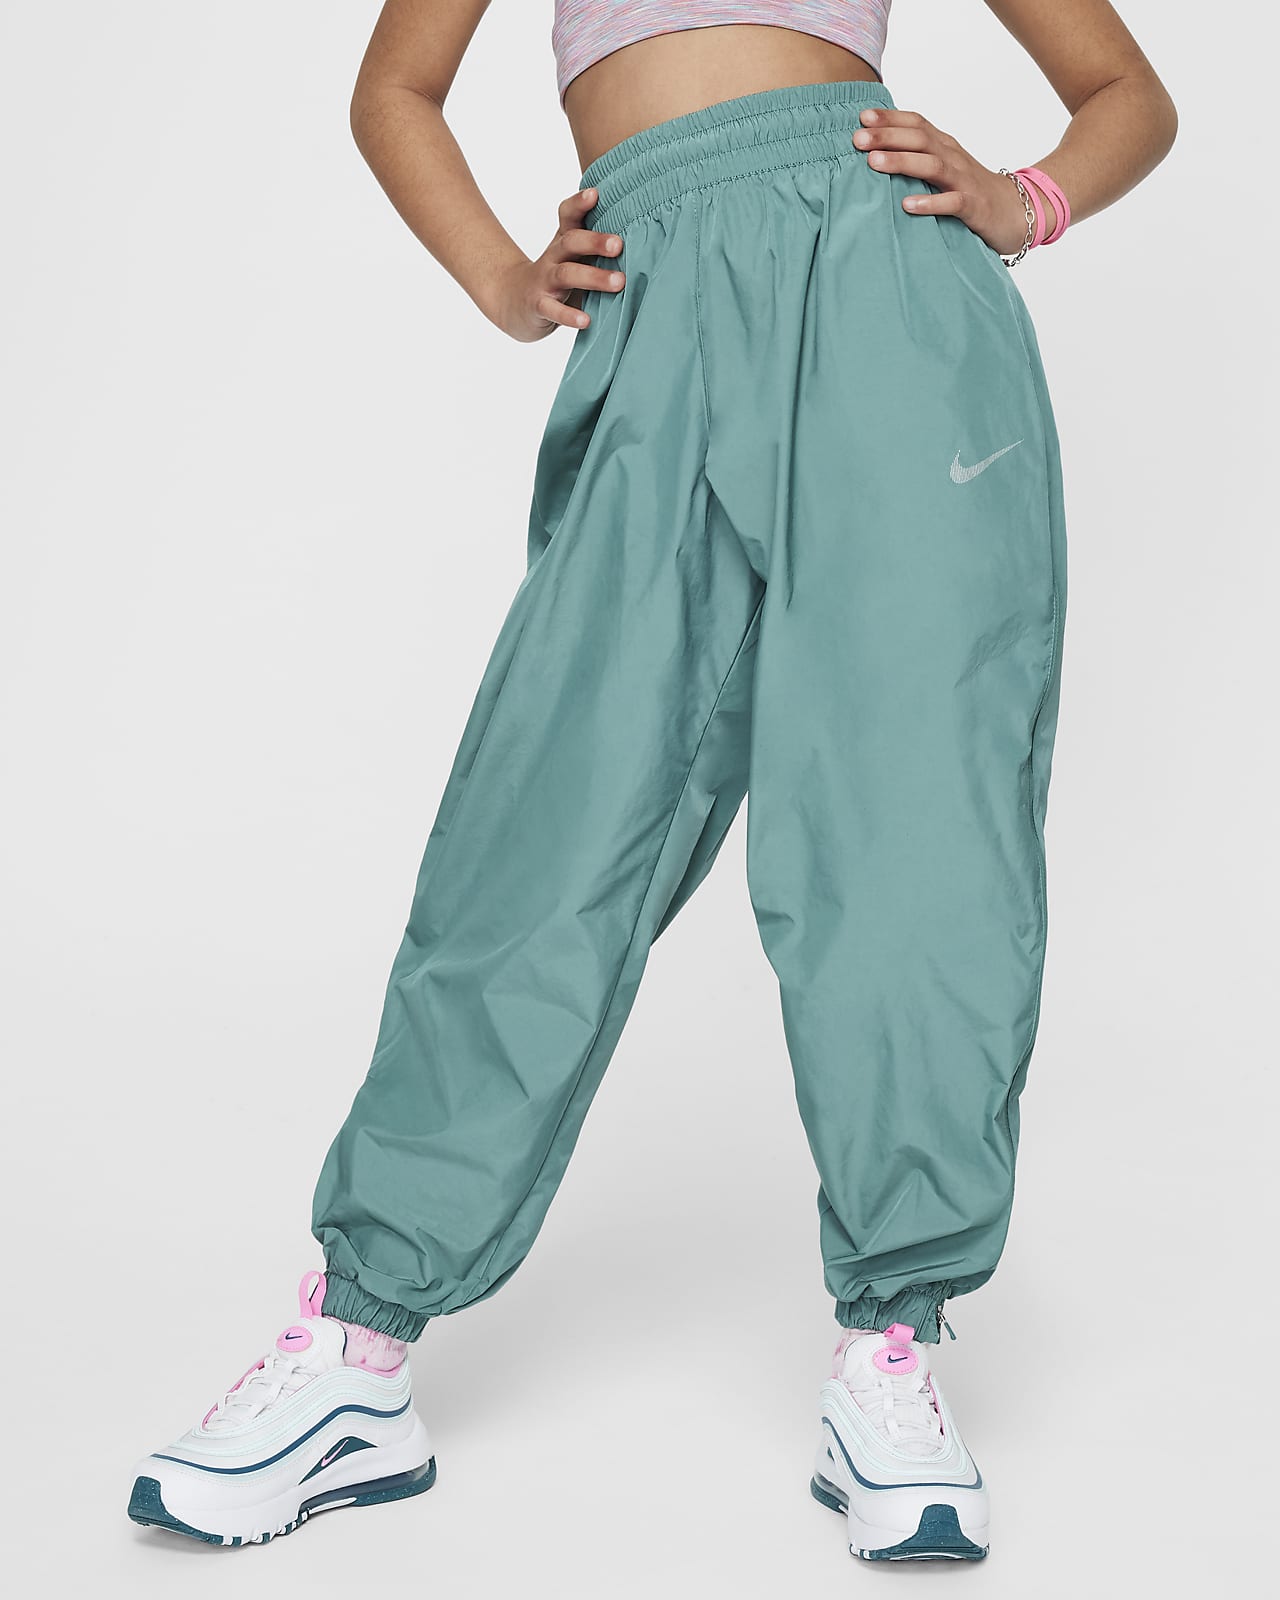 Tkané kalhoty Nike Sportswear pro větší děti (dívky)